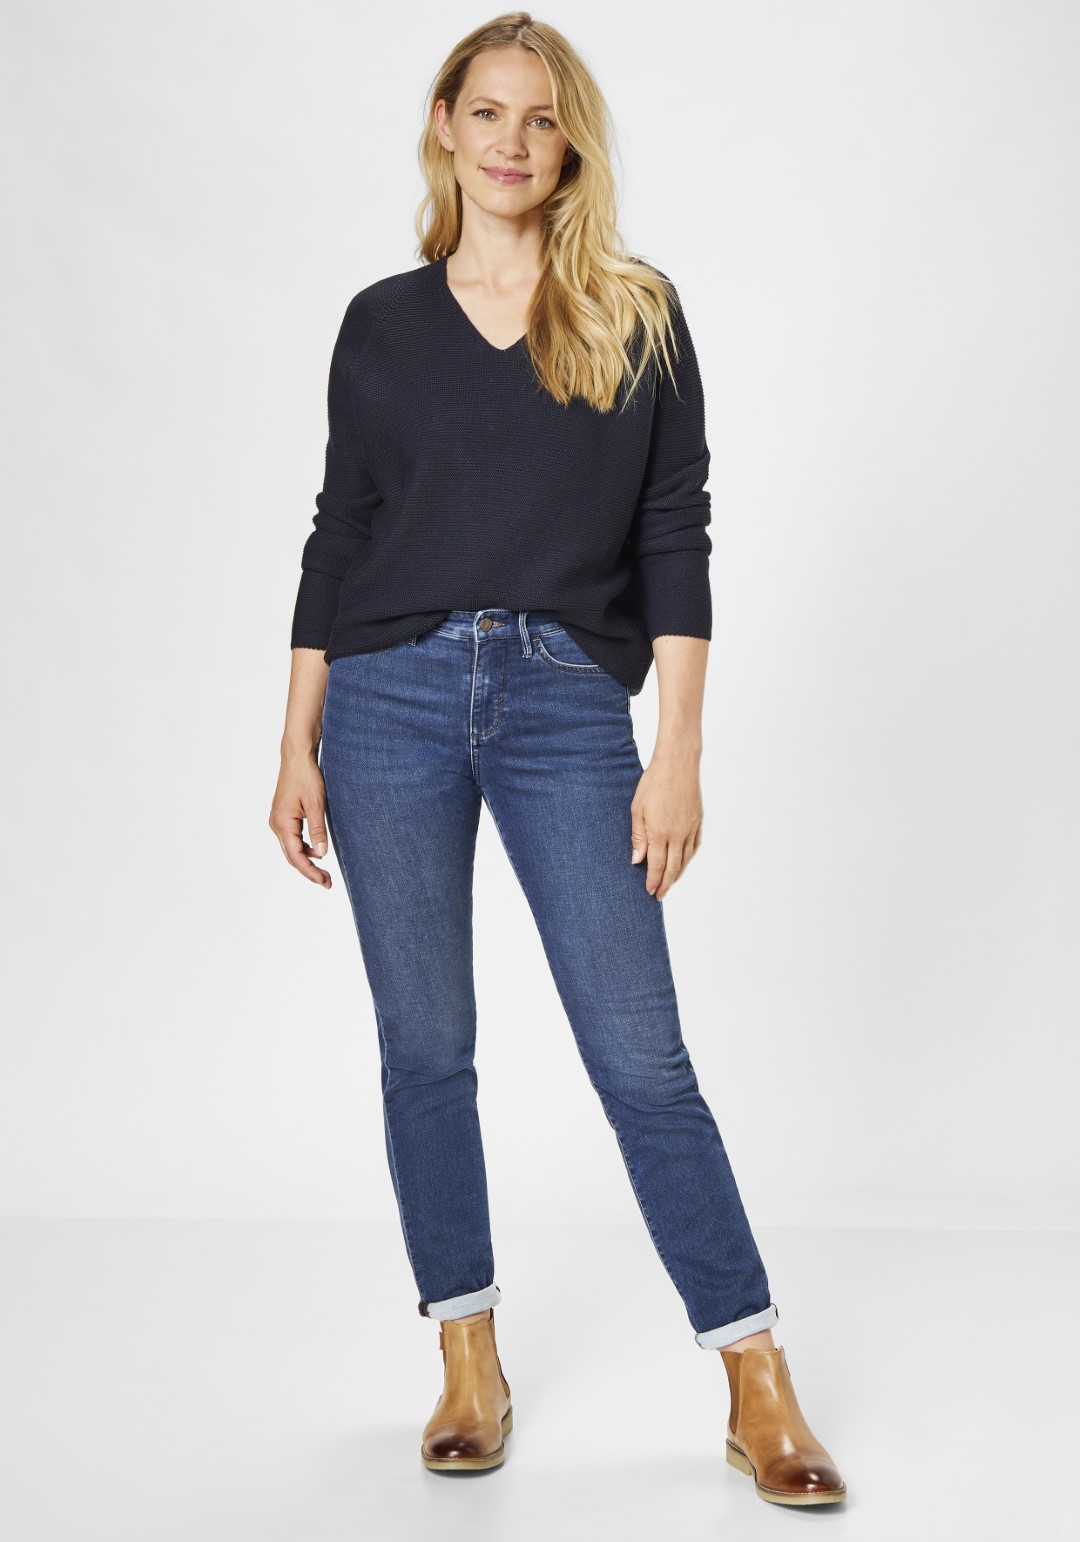 direkt Damen-Jeans vom Online PADDOCK\'S Hersteller kaufen | Shop